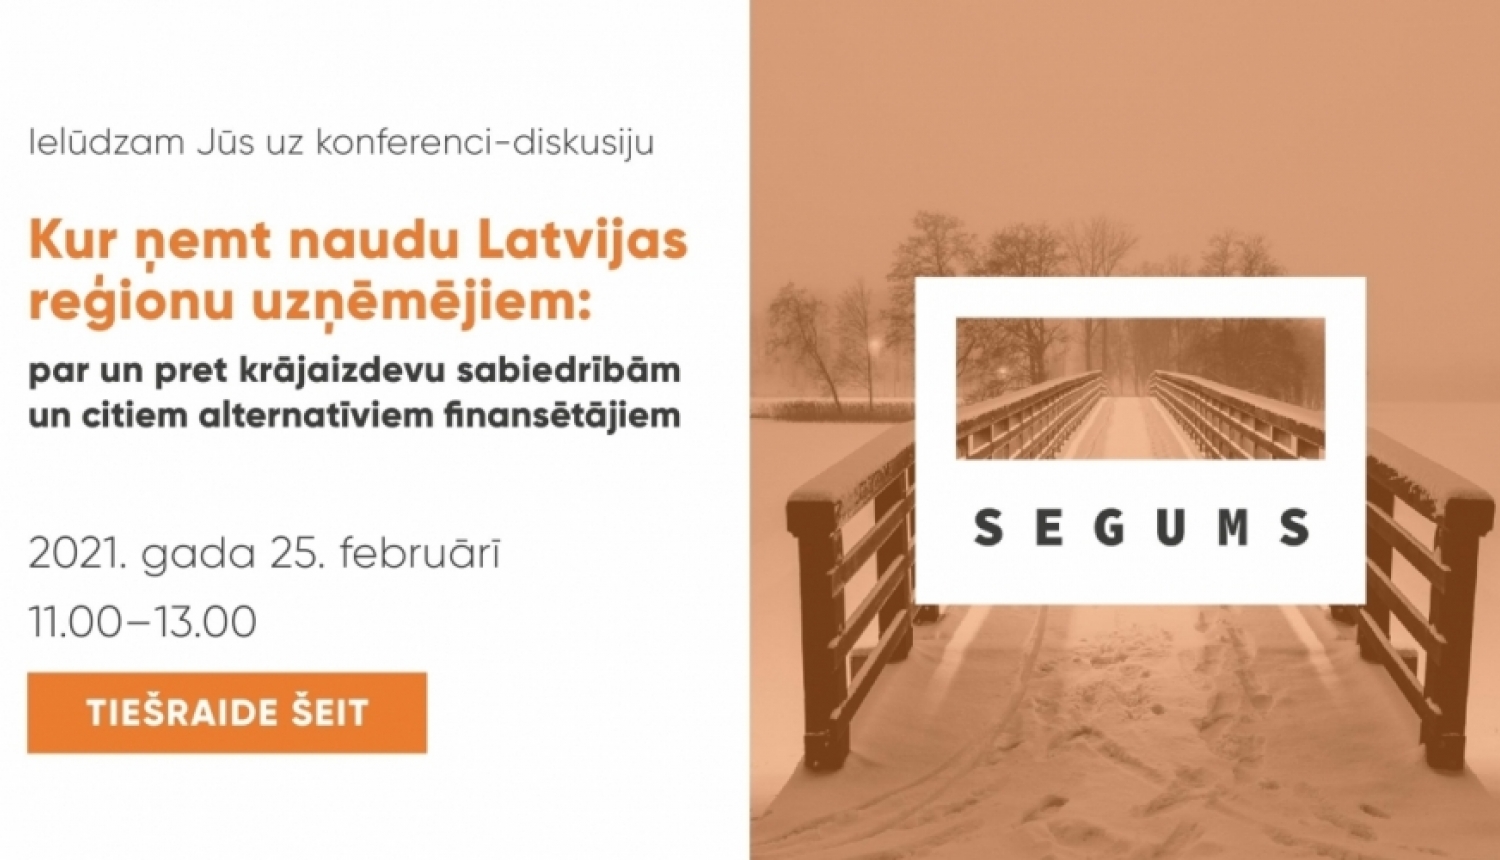 Diskusija “Kur ņemt naudu Latvijas reģionu uzņēmējiem: par un pret kooperatīvām krājaizdevu sabiedrībām un citiem alternatīviem finansētājiem”